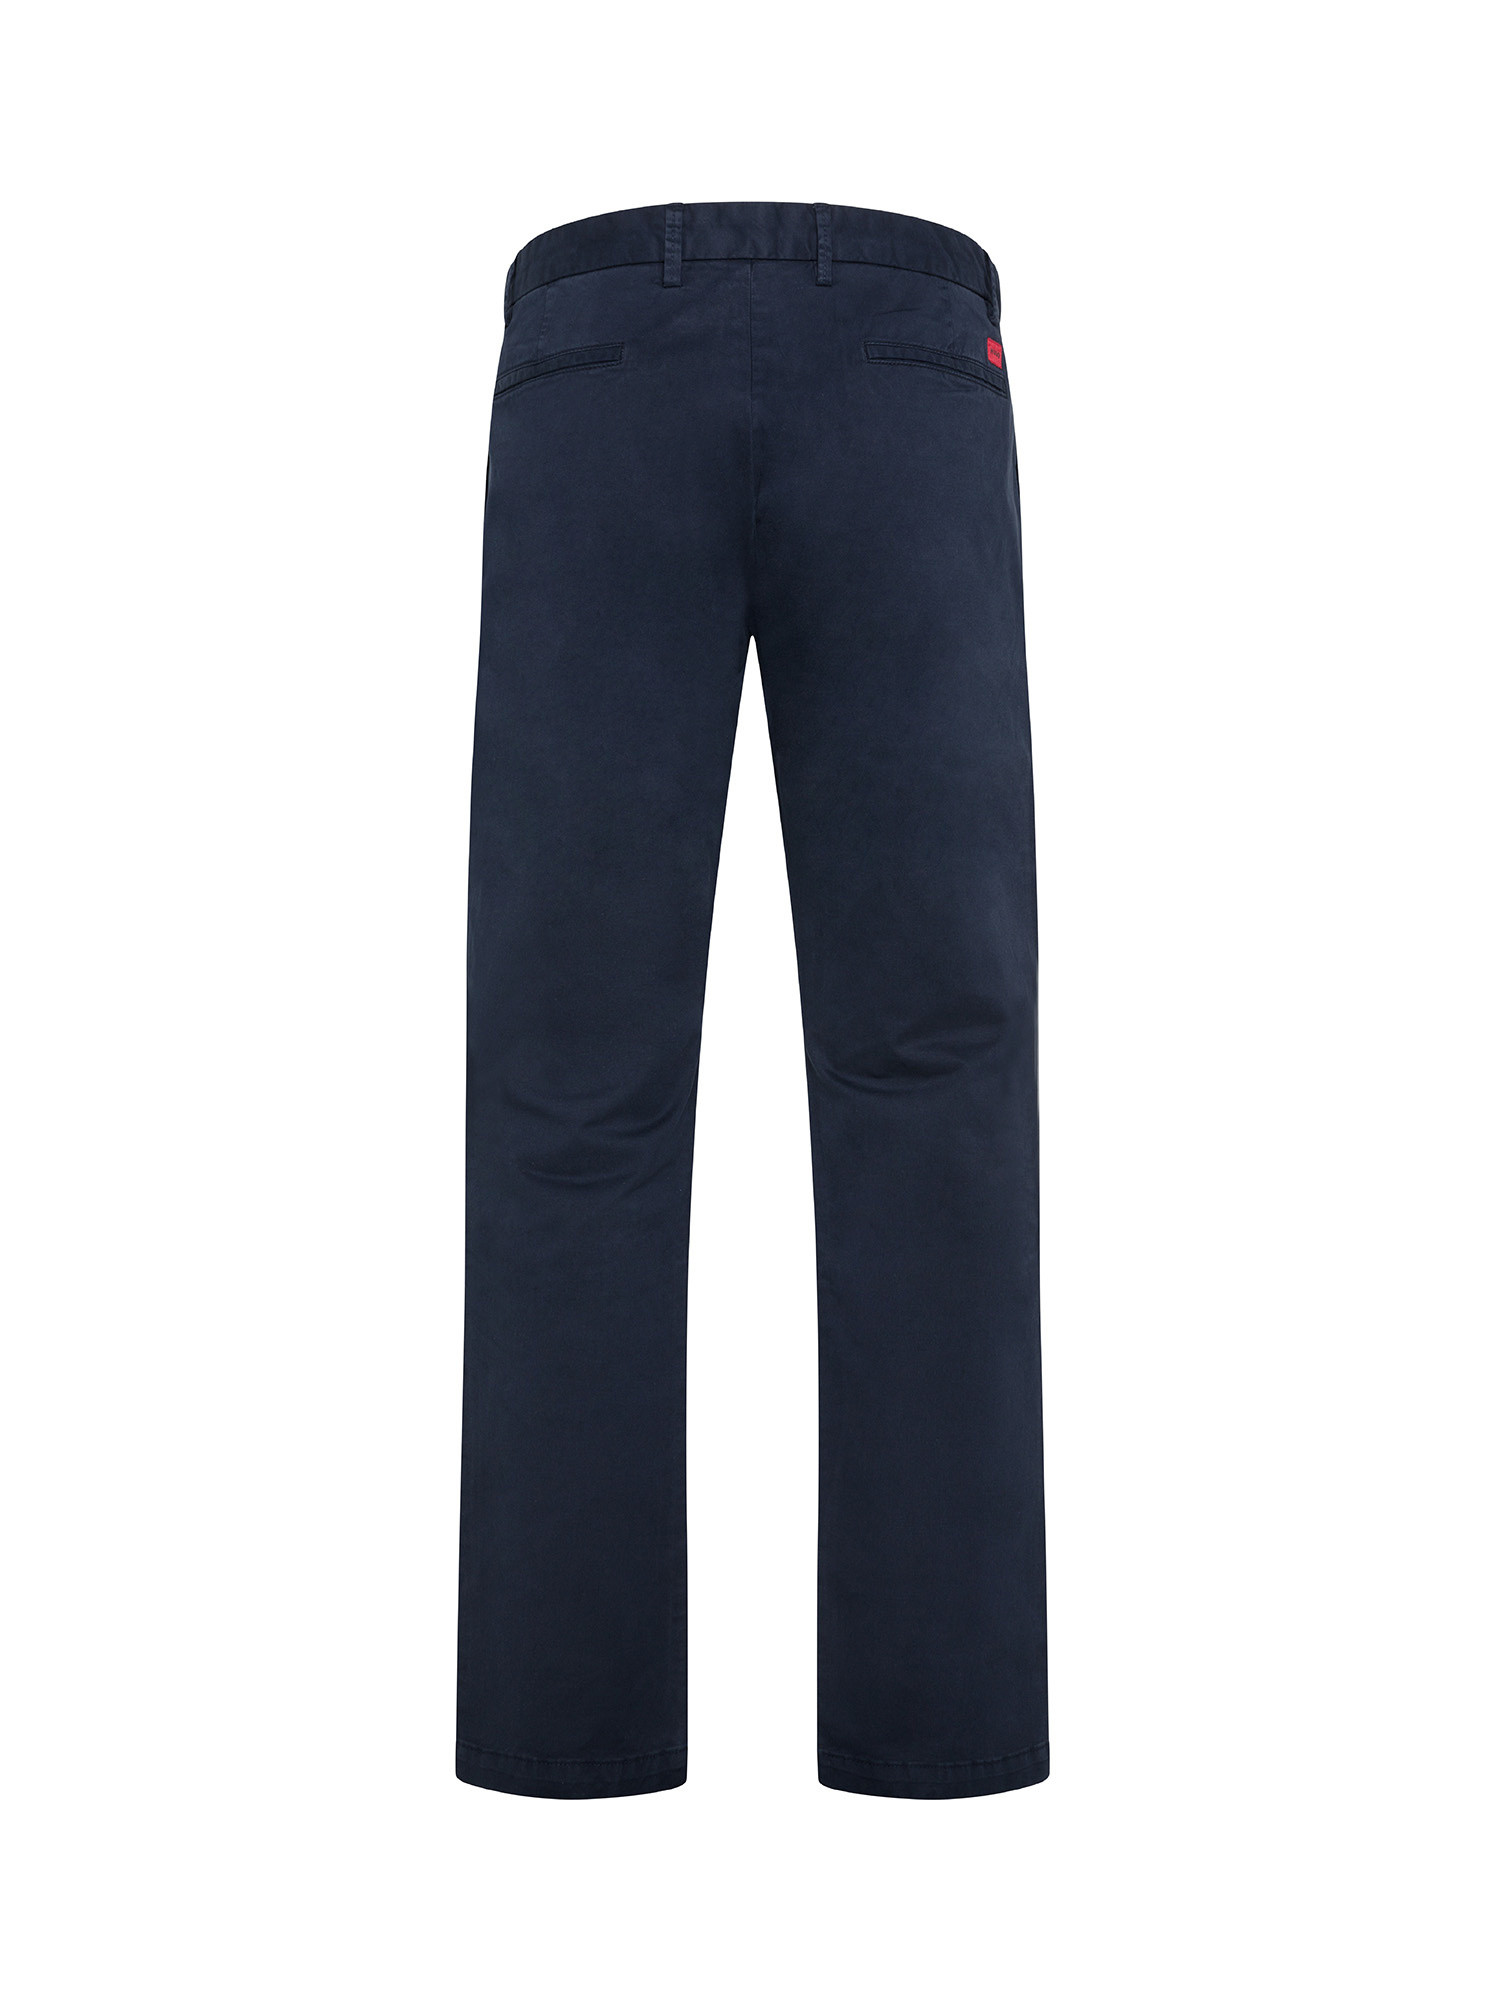 Hugo - Pantaloni chino slim fit, Blu scuro, large image number 1